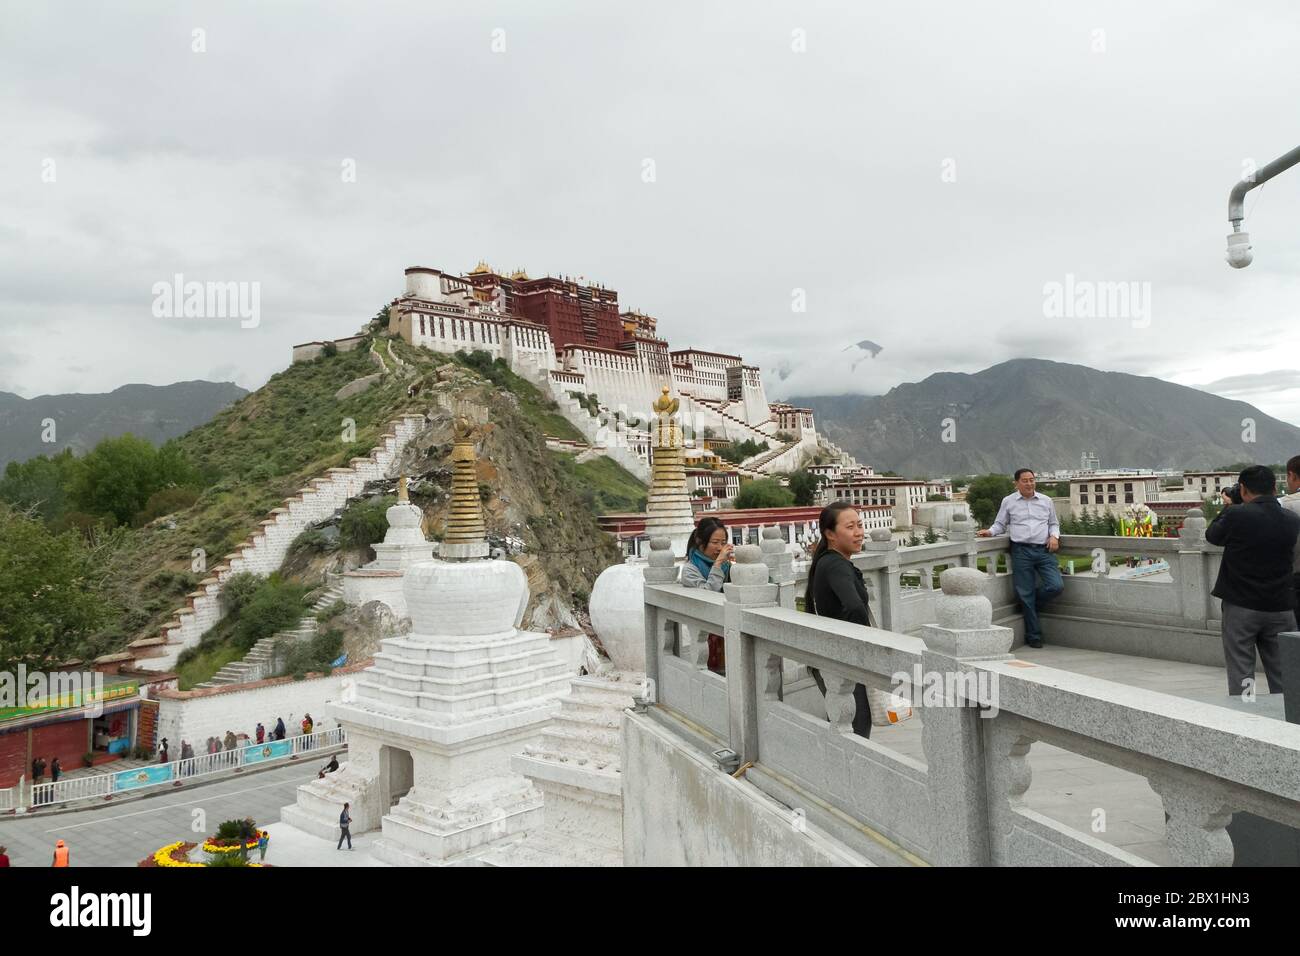 Lhasa, Tibet / China - 20. August 2012: Das Potala-Kloster in der Stadt Lhasa in der Tibet-Autonomen Region China. Die Residenz des Dalai Stockfoto